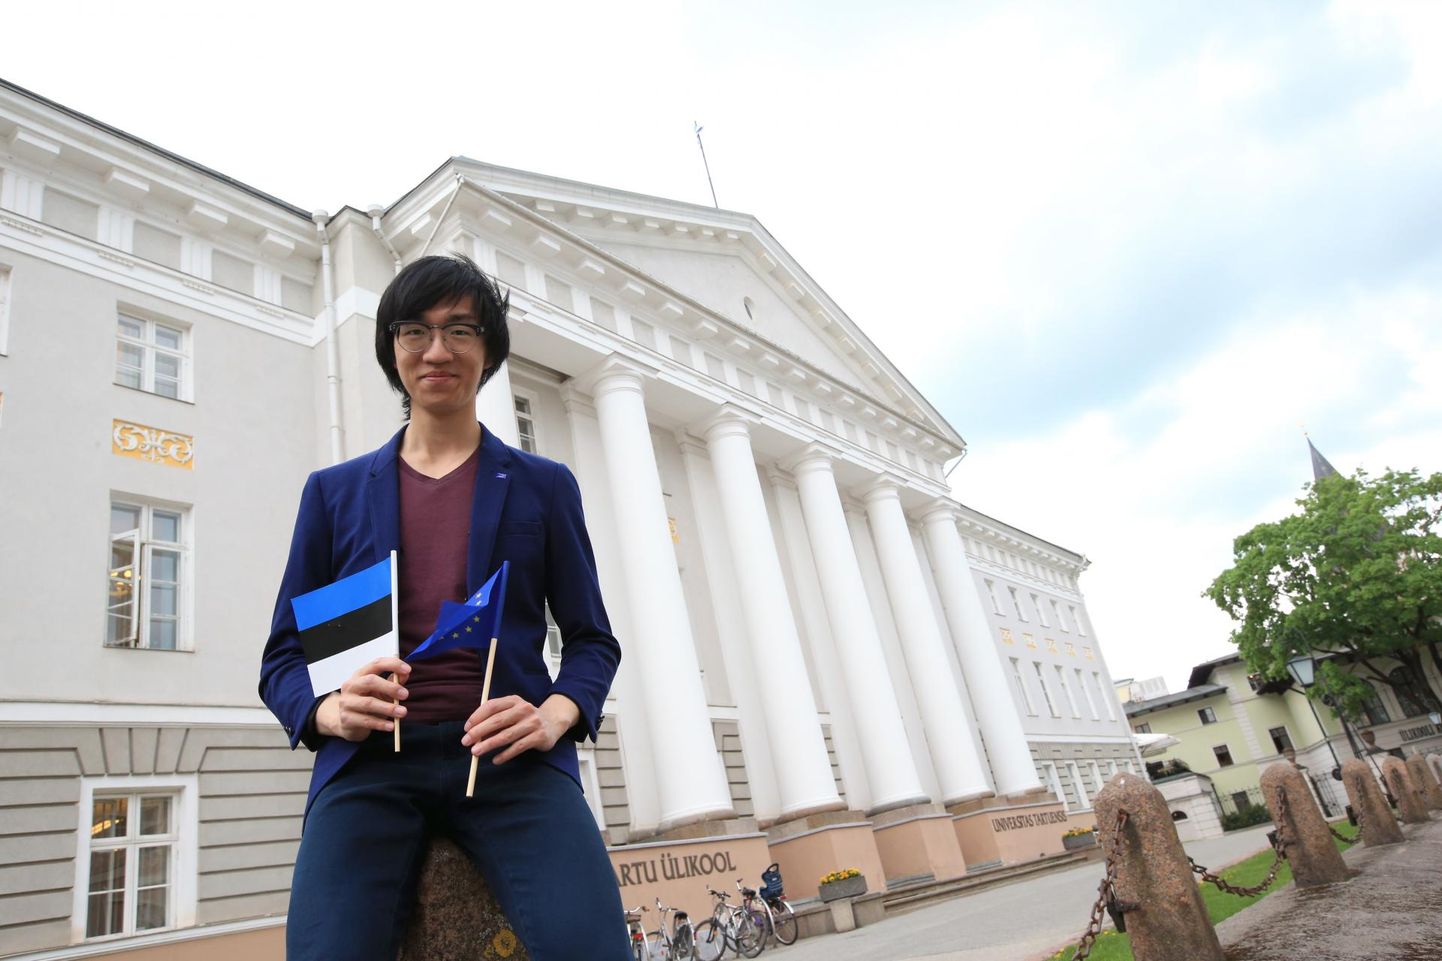 Tartu ülikooli magistrant, Hongkongist pärit Iverson Ng on oma tulevikuplaanid sidunud Eestiga.